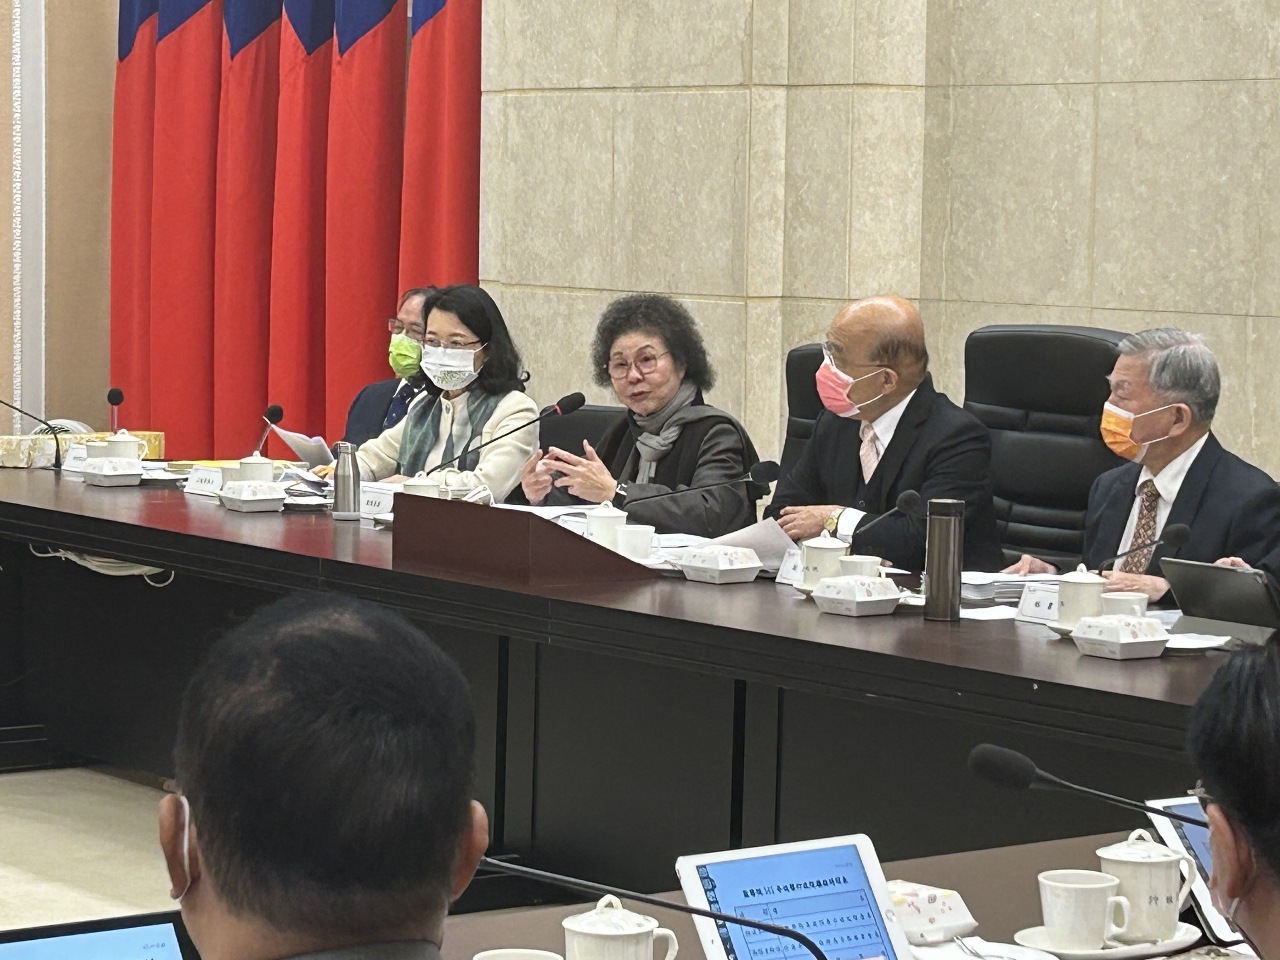 PM Su: Intropeksi Diri dari Hasil Pemilu dan Terus Bekerja Keras